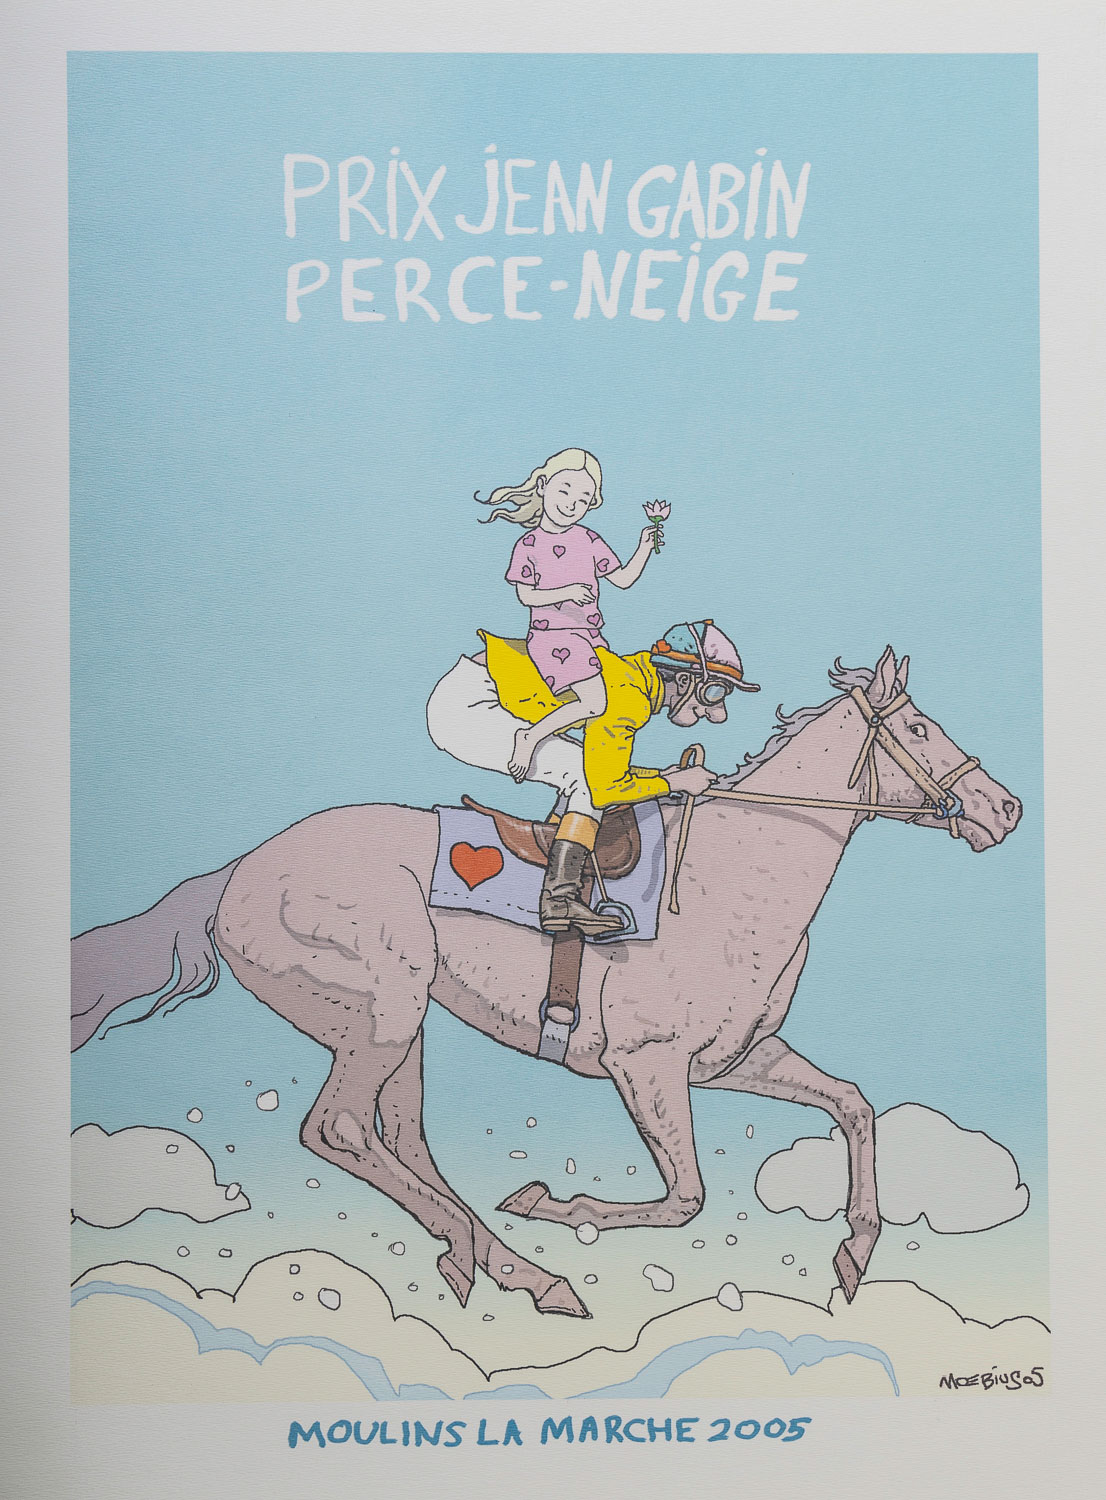 Jean Giraud, Moebius poster : Prix Jean Gabin Perce Neige